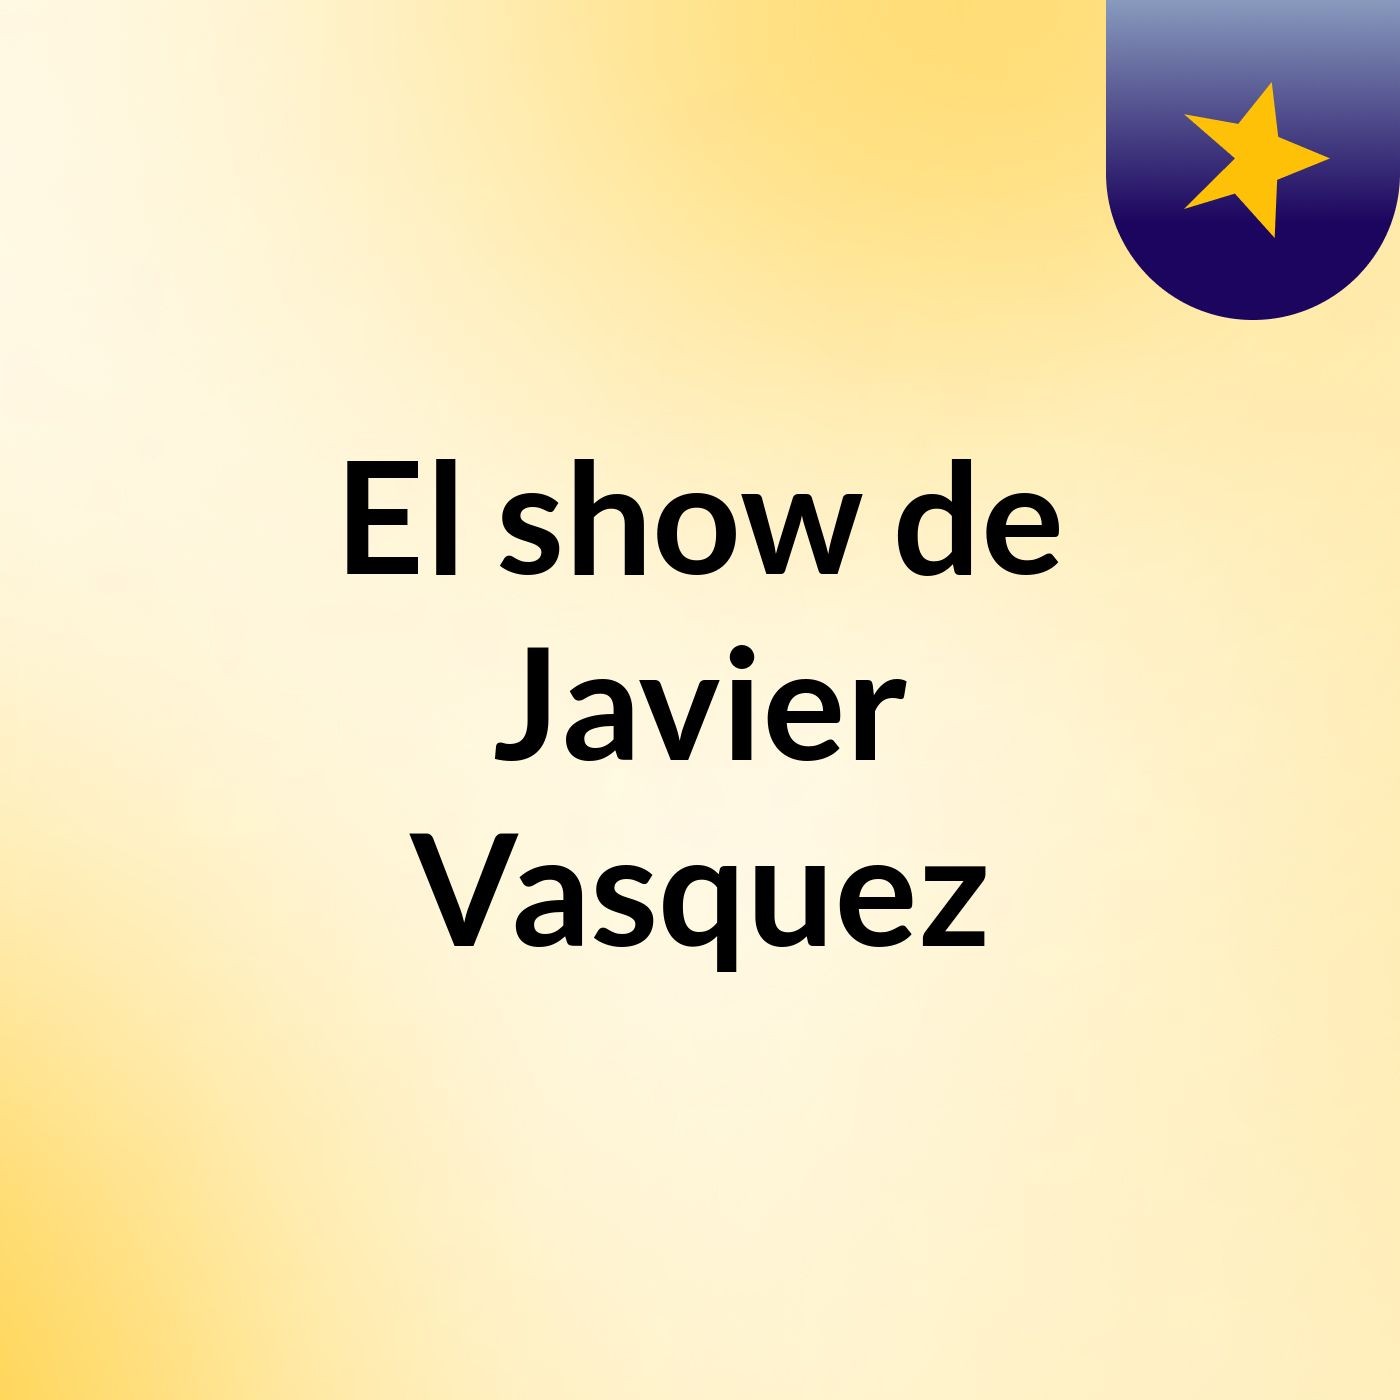 El show de Javier Vasquez